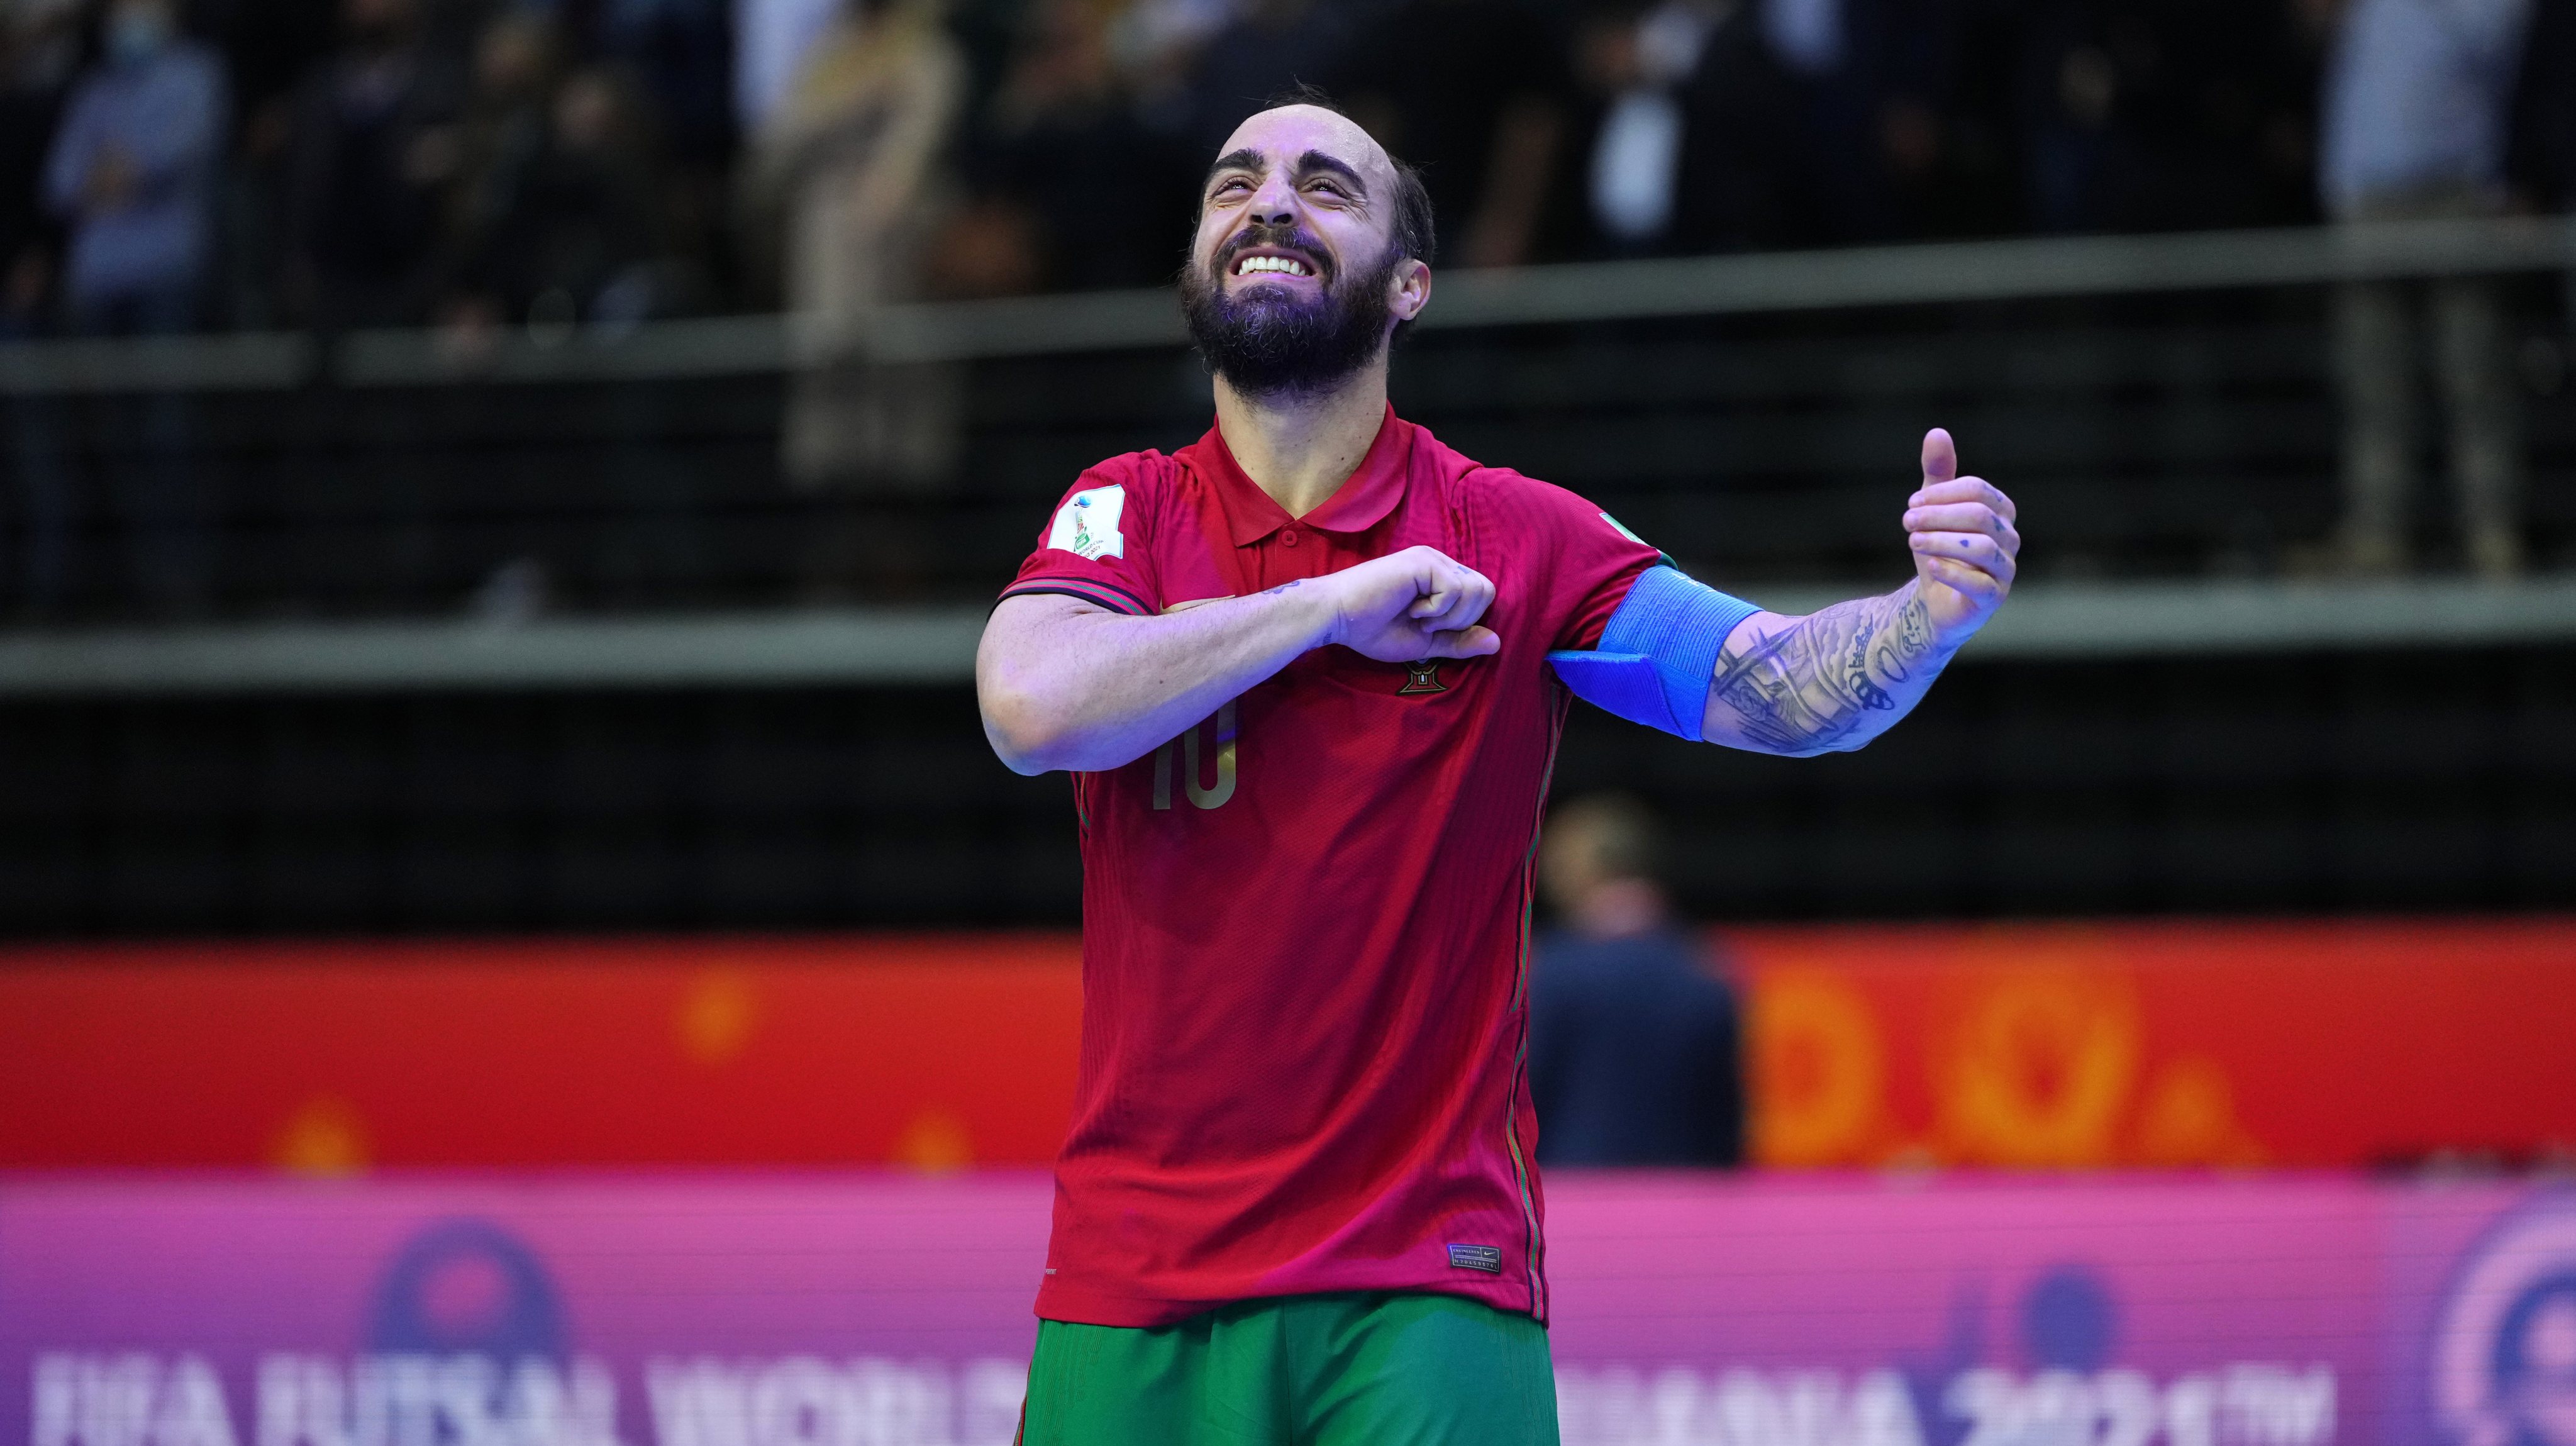 Dois portugueses candidatos a melhor jogador de futsal do mundo